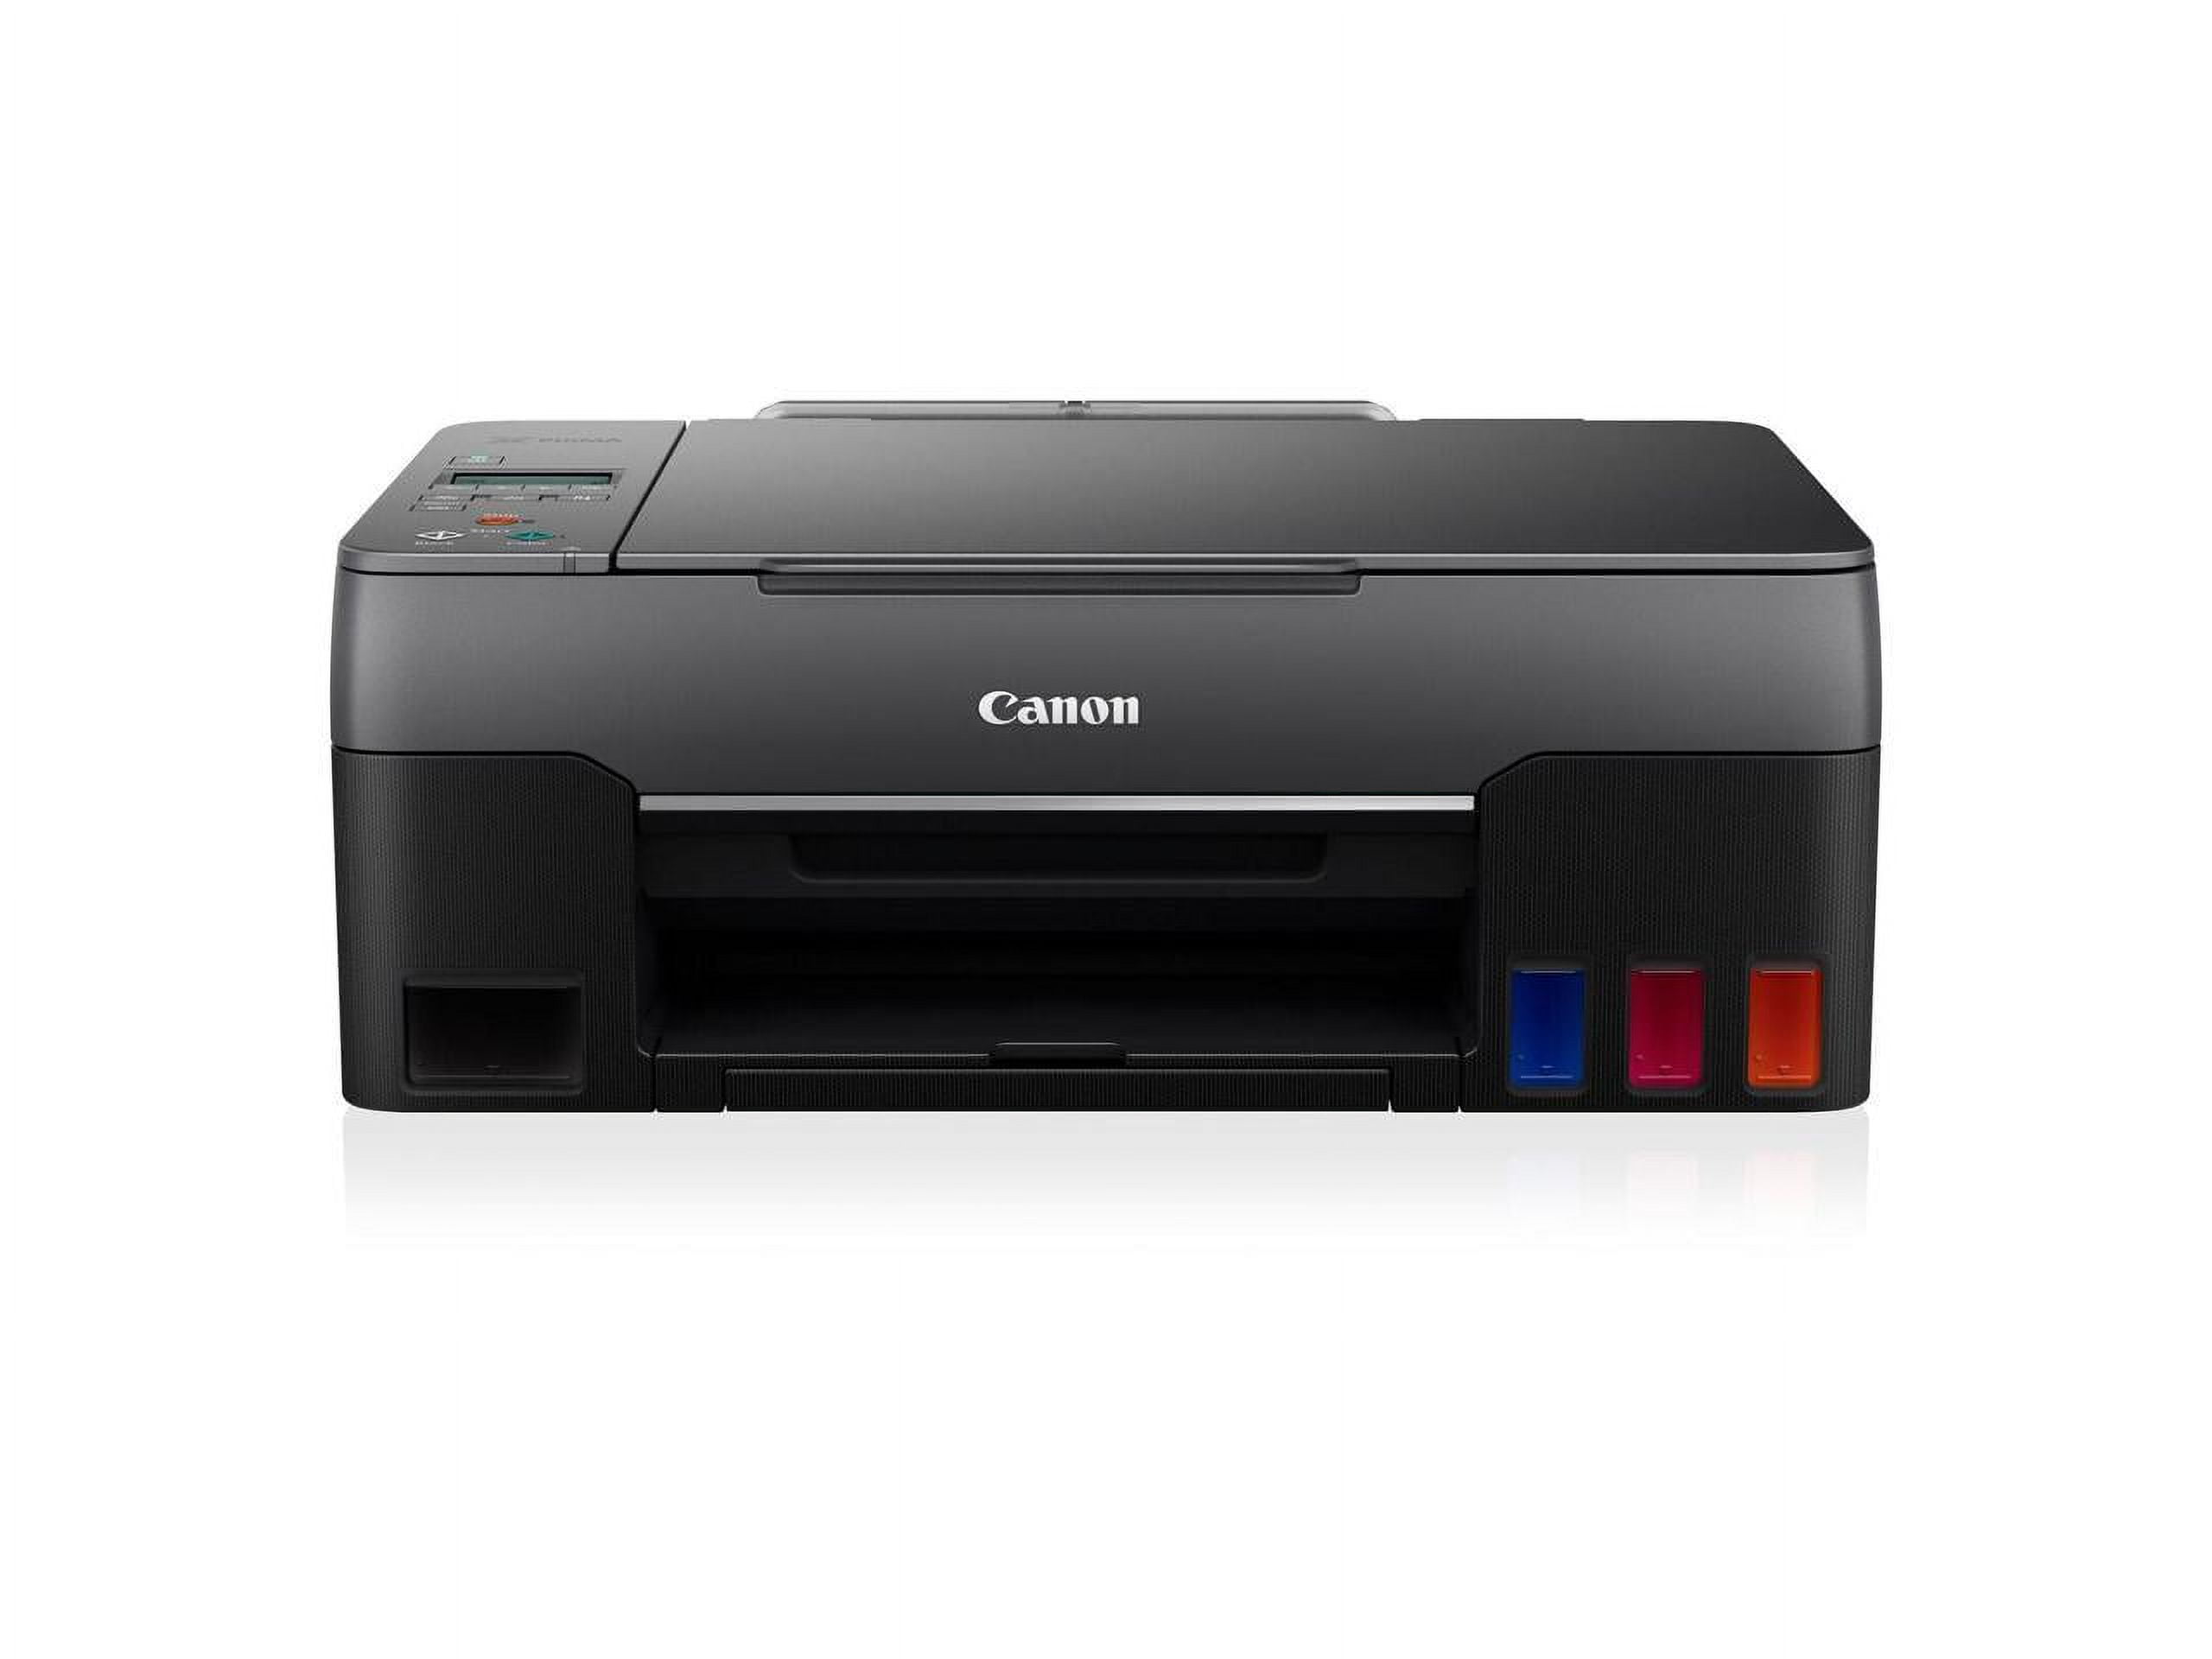 Canon PIXMA G2260 MegaTank All-in-One Printer - Black